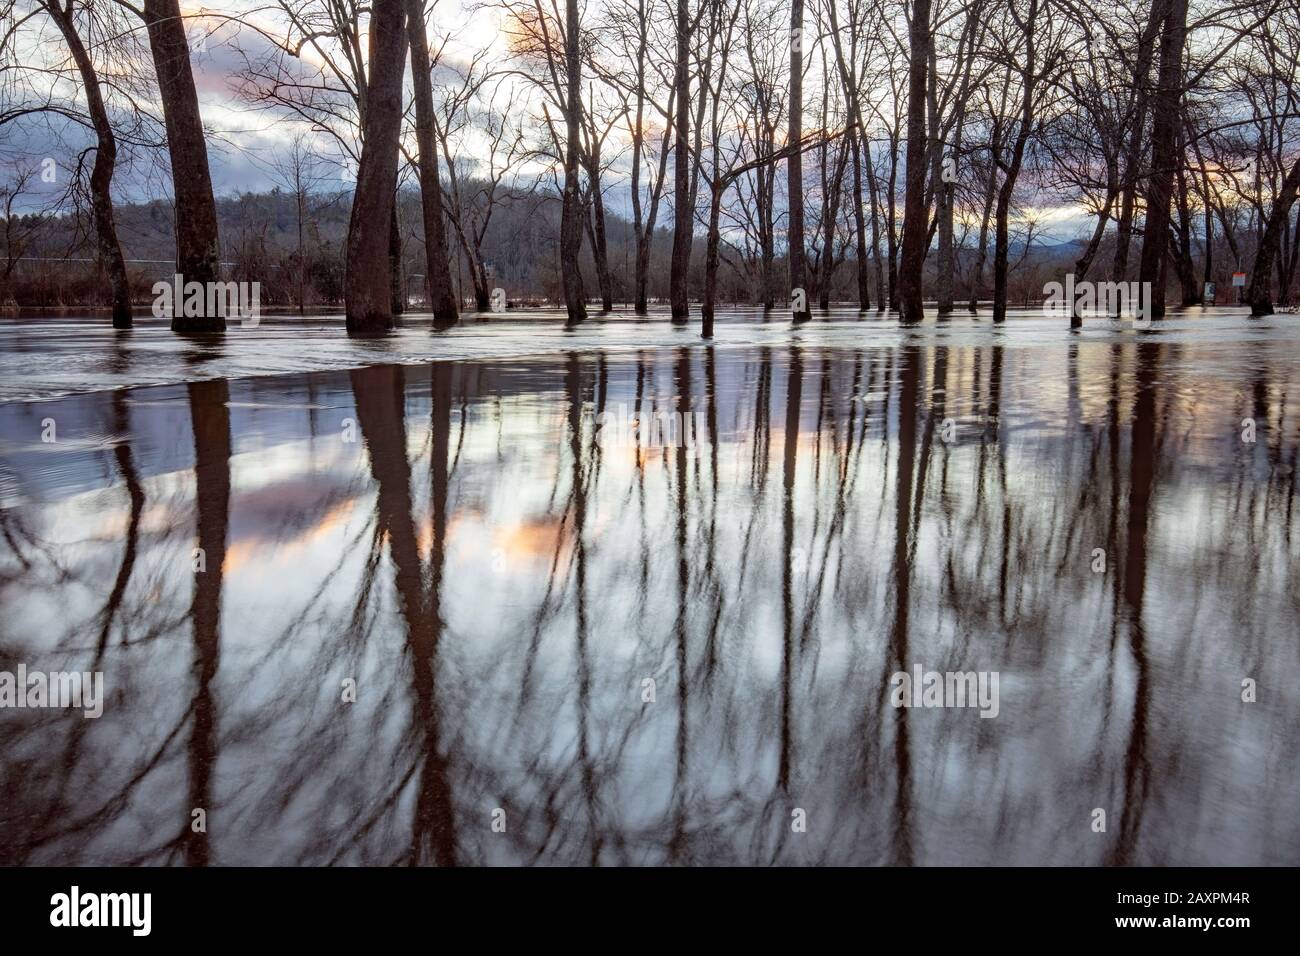 Überschwemmte Waldspiegelungen bei Sonnenuntergang, die durch den französischen Broad River entstanden sind, der nach starken Regenfällen seine Ufer überflutete. Hap Simpson Park, Brevard, North Carol Stockfoto